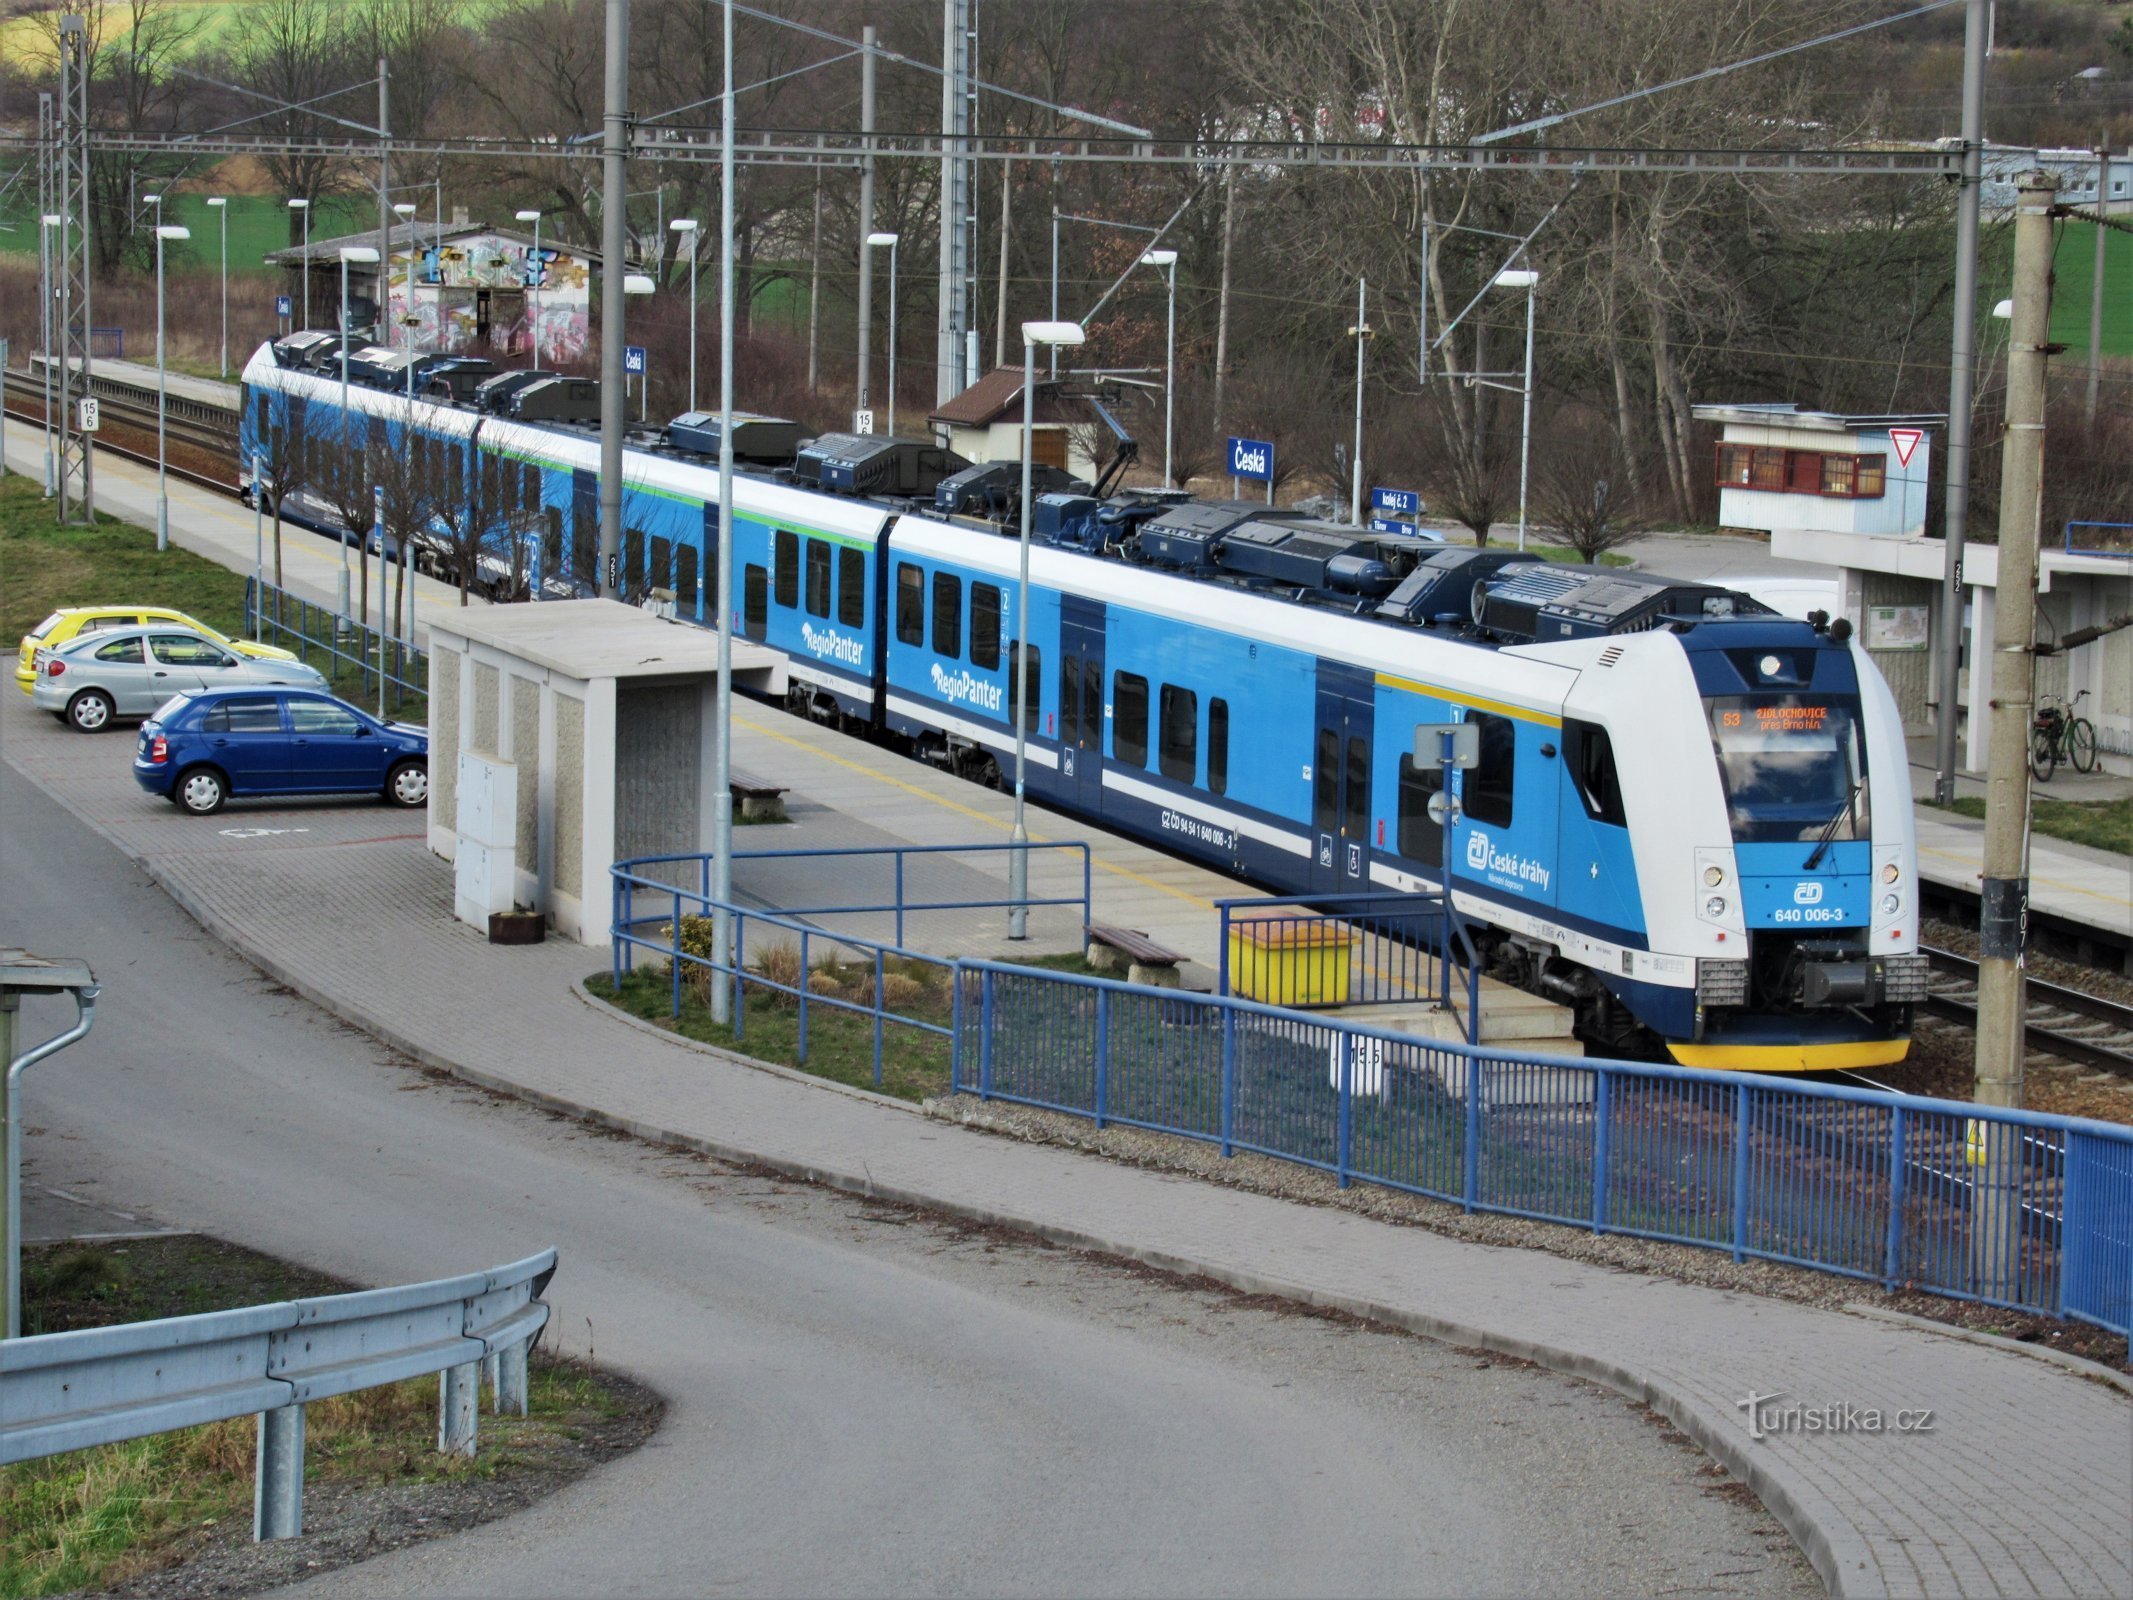 Platform towards Brno